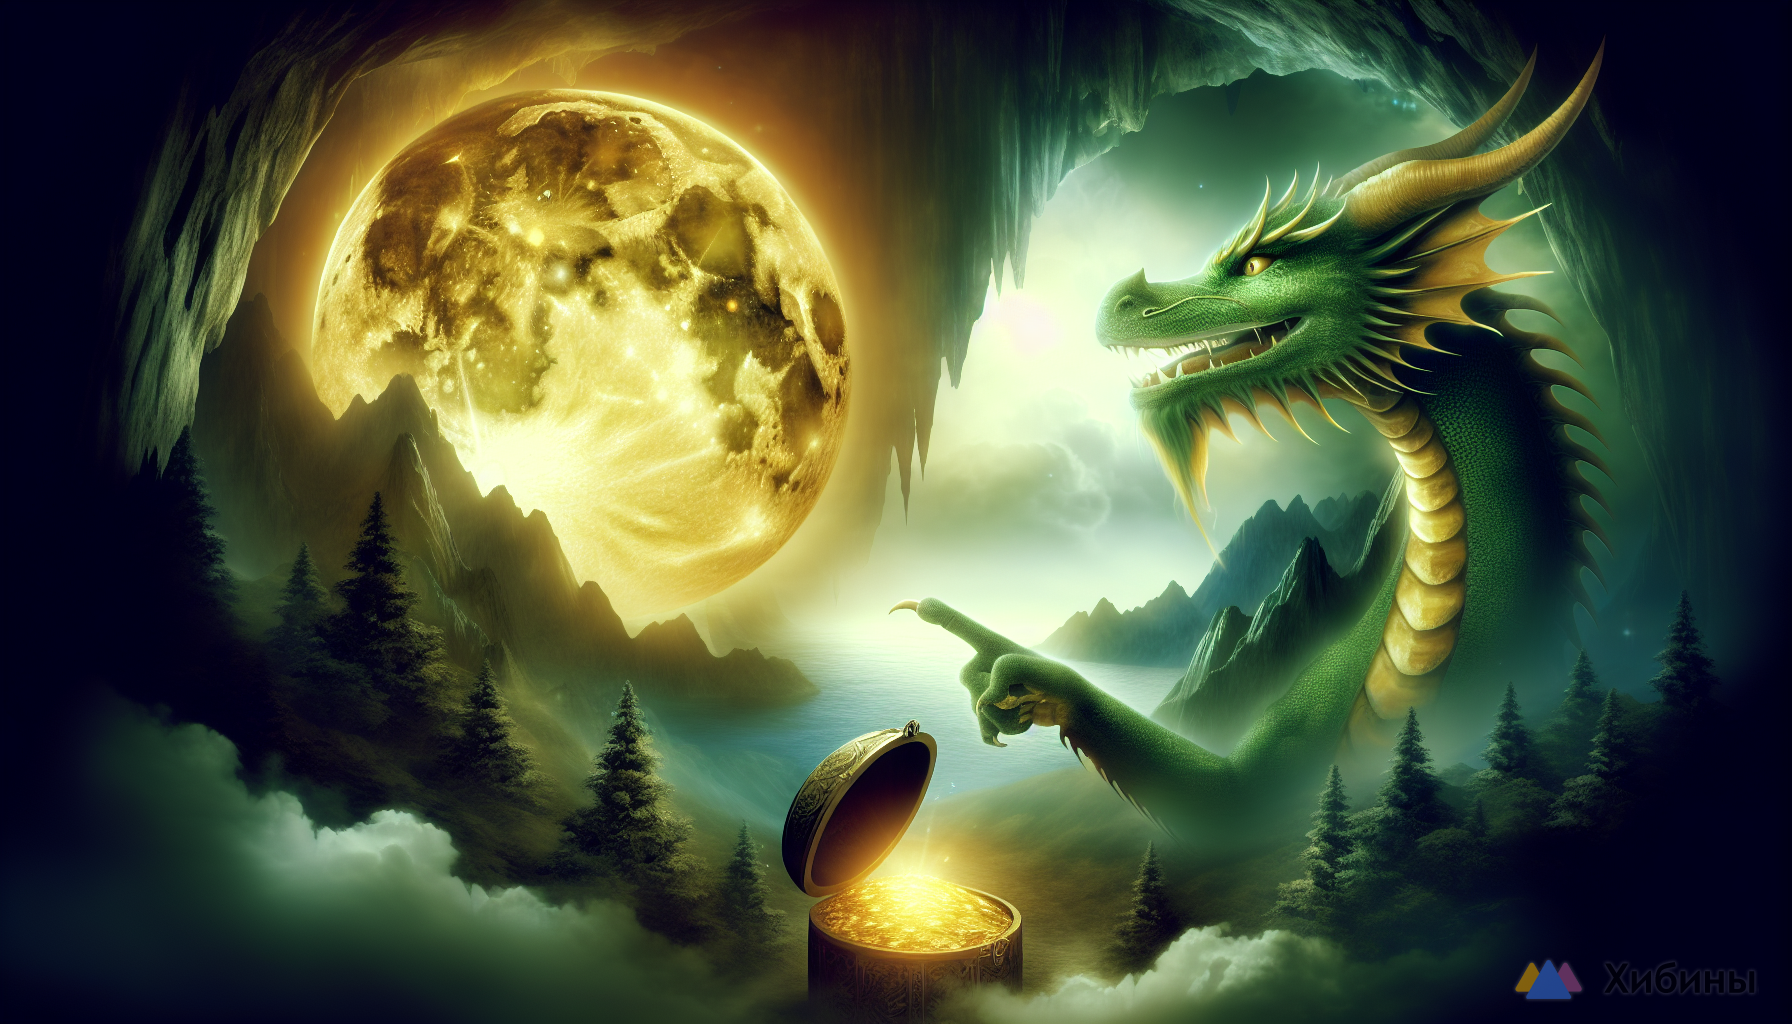 Зеленый дракон укажет путь в пещеру сокровищ: этот знак сказочно разбогатеет после 24 апреля— полная Луна окажется золотой